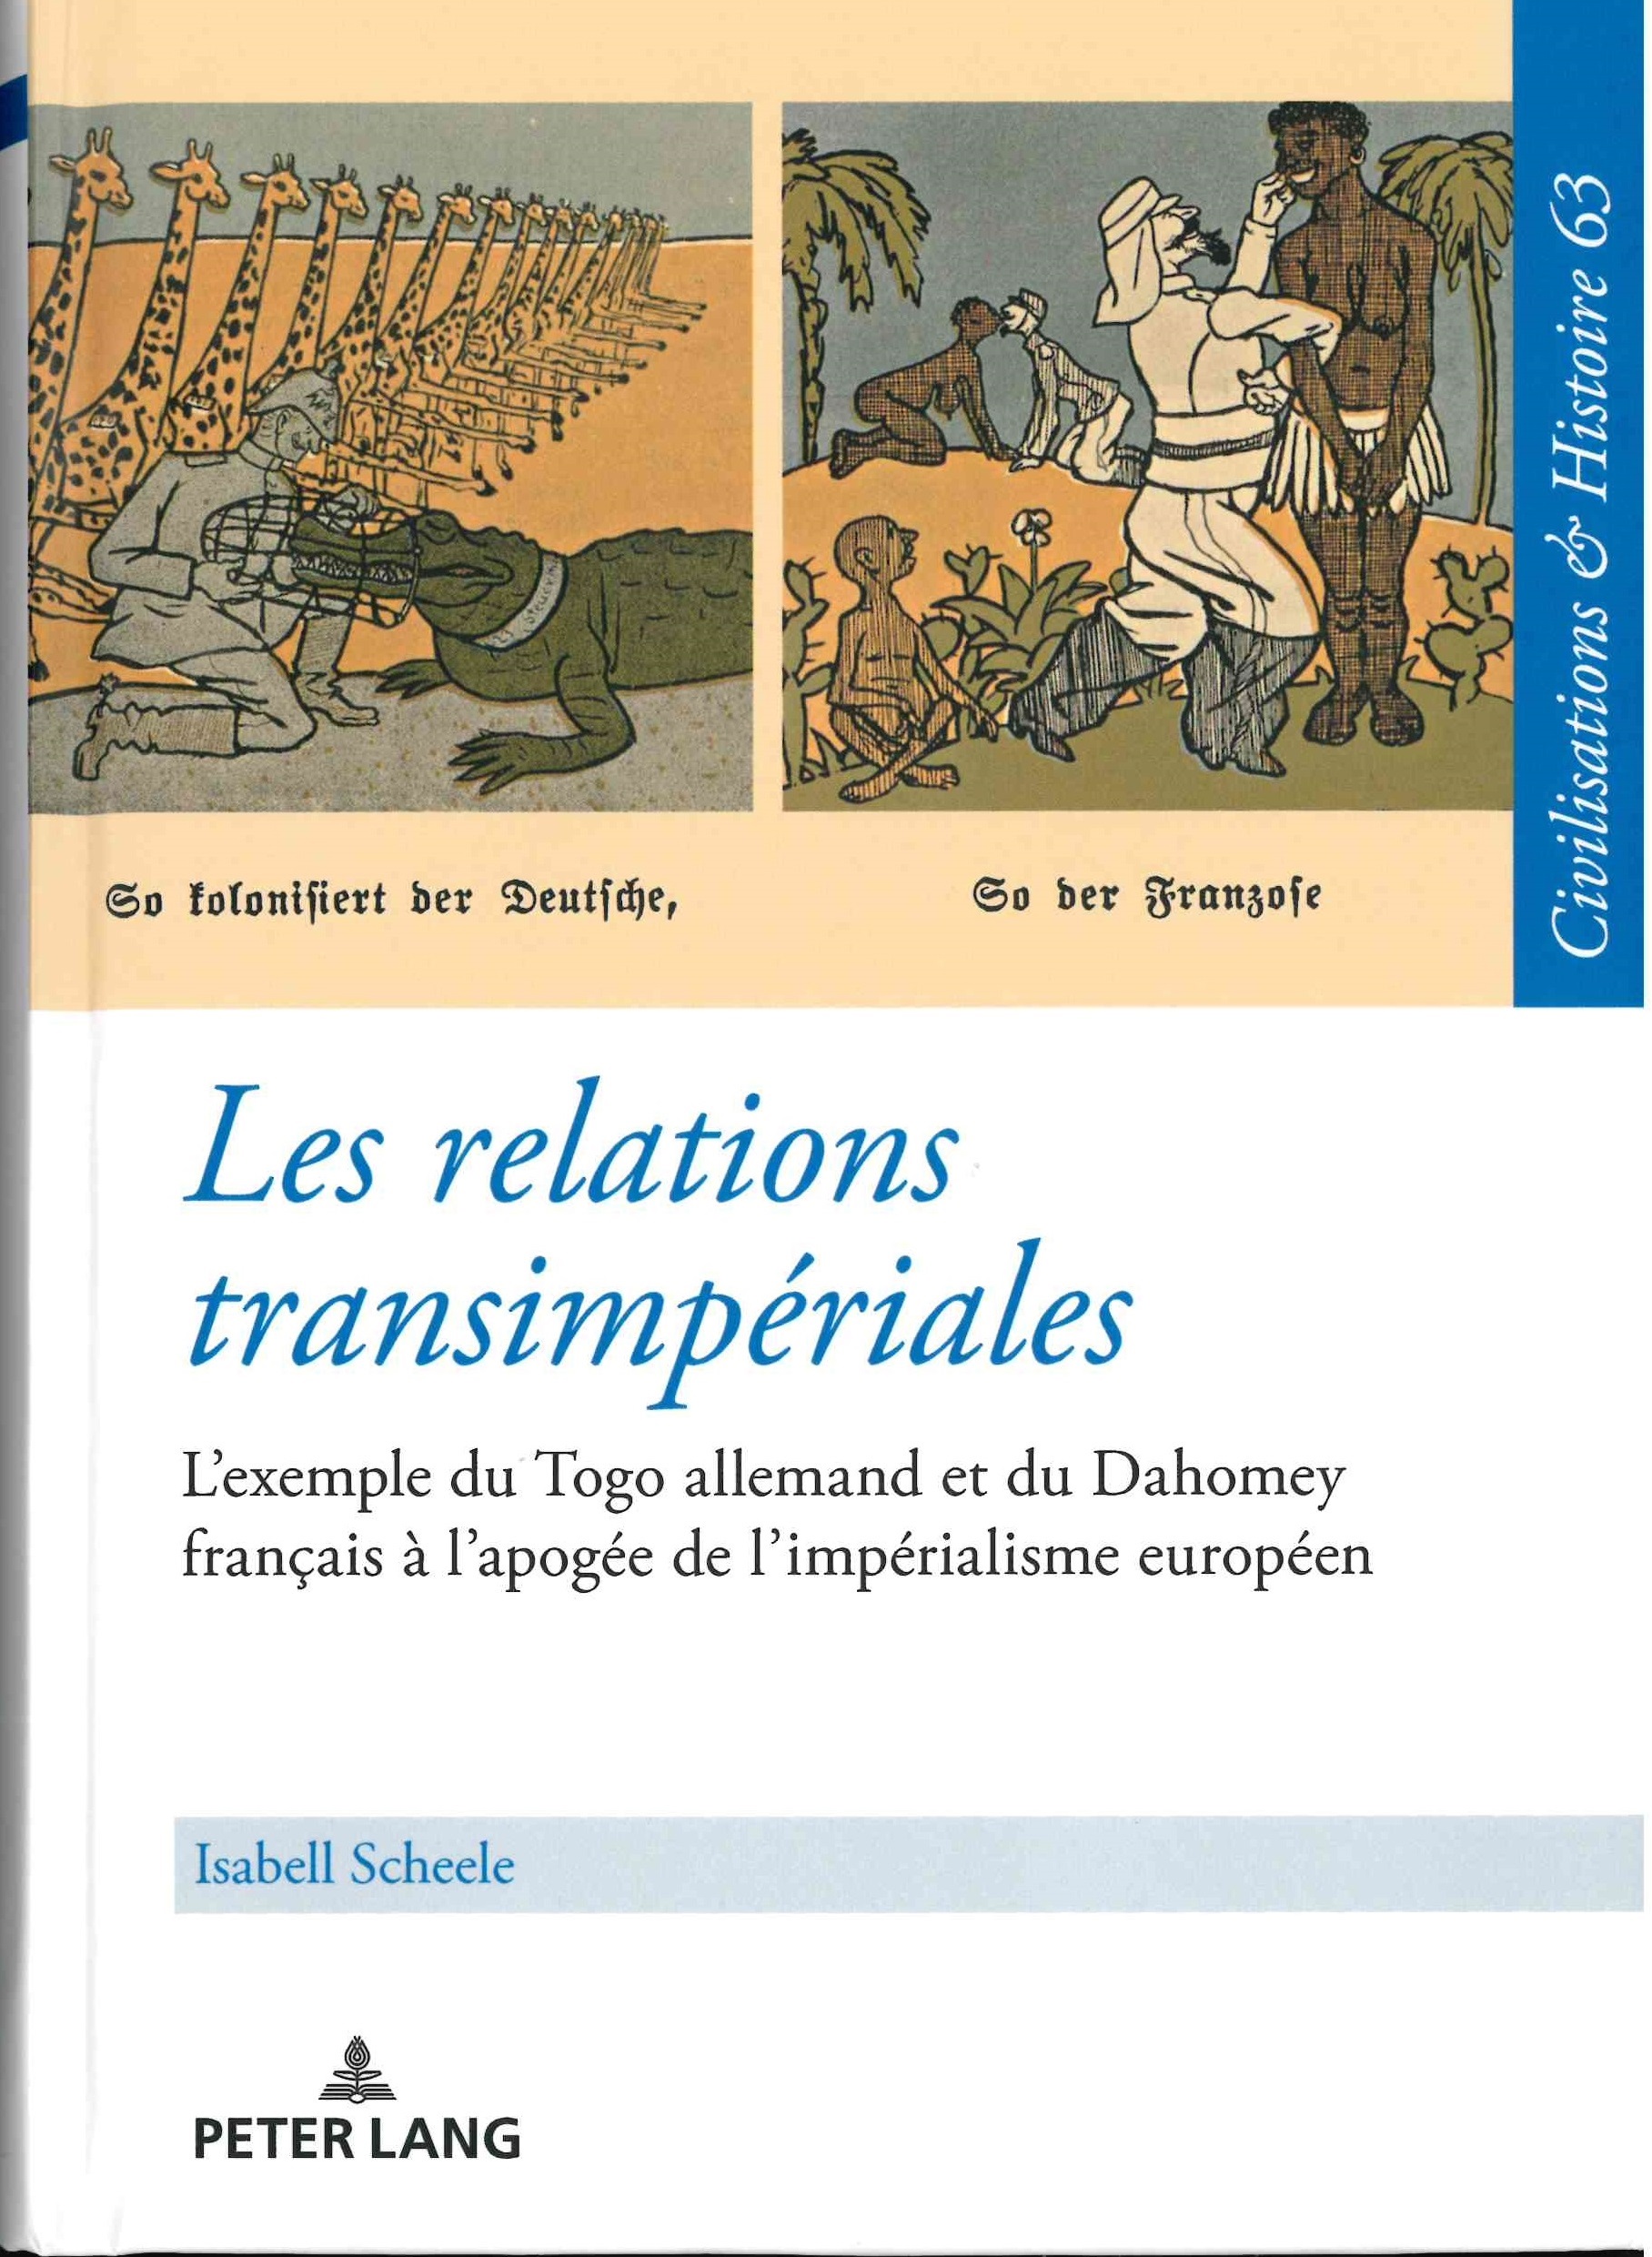 Scheele (Isabell), Les relations transimpériales : l’exemple du Togo allemand et du Dahomey français à l’apogée de l’impériaslisme européen